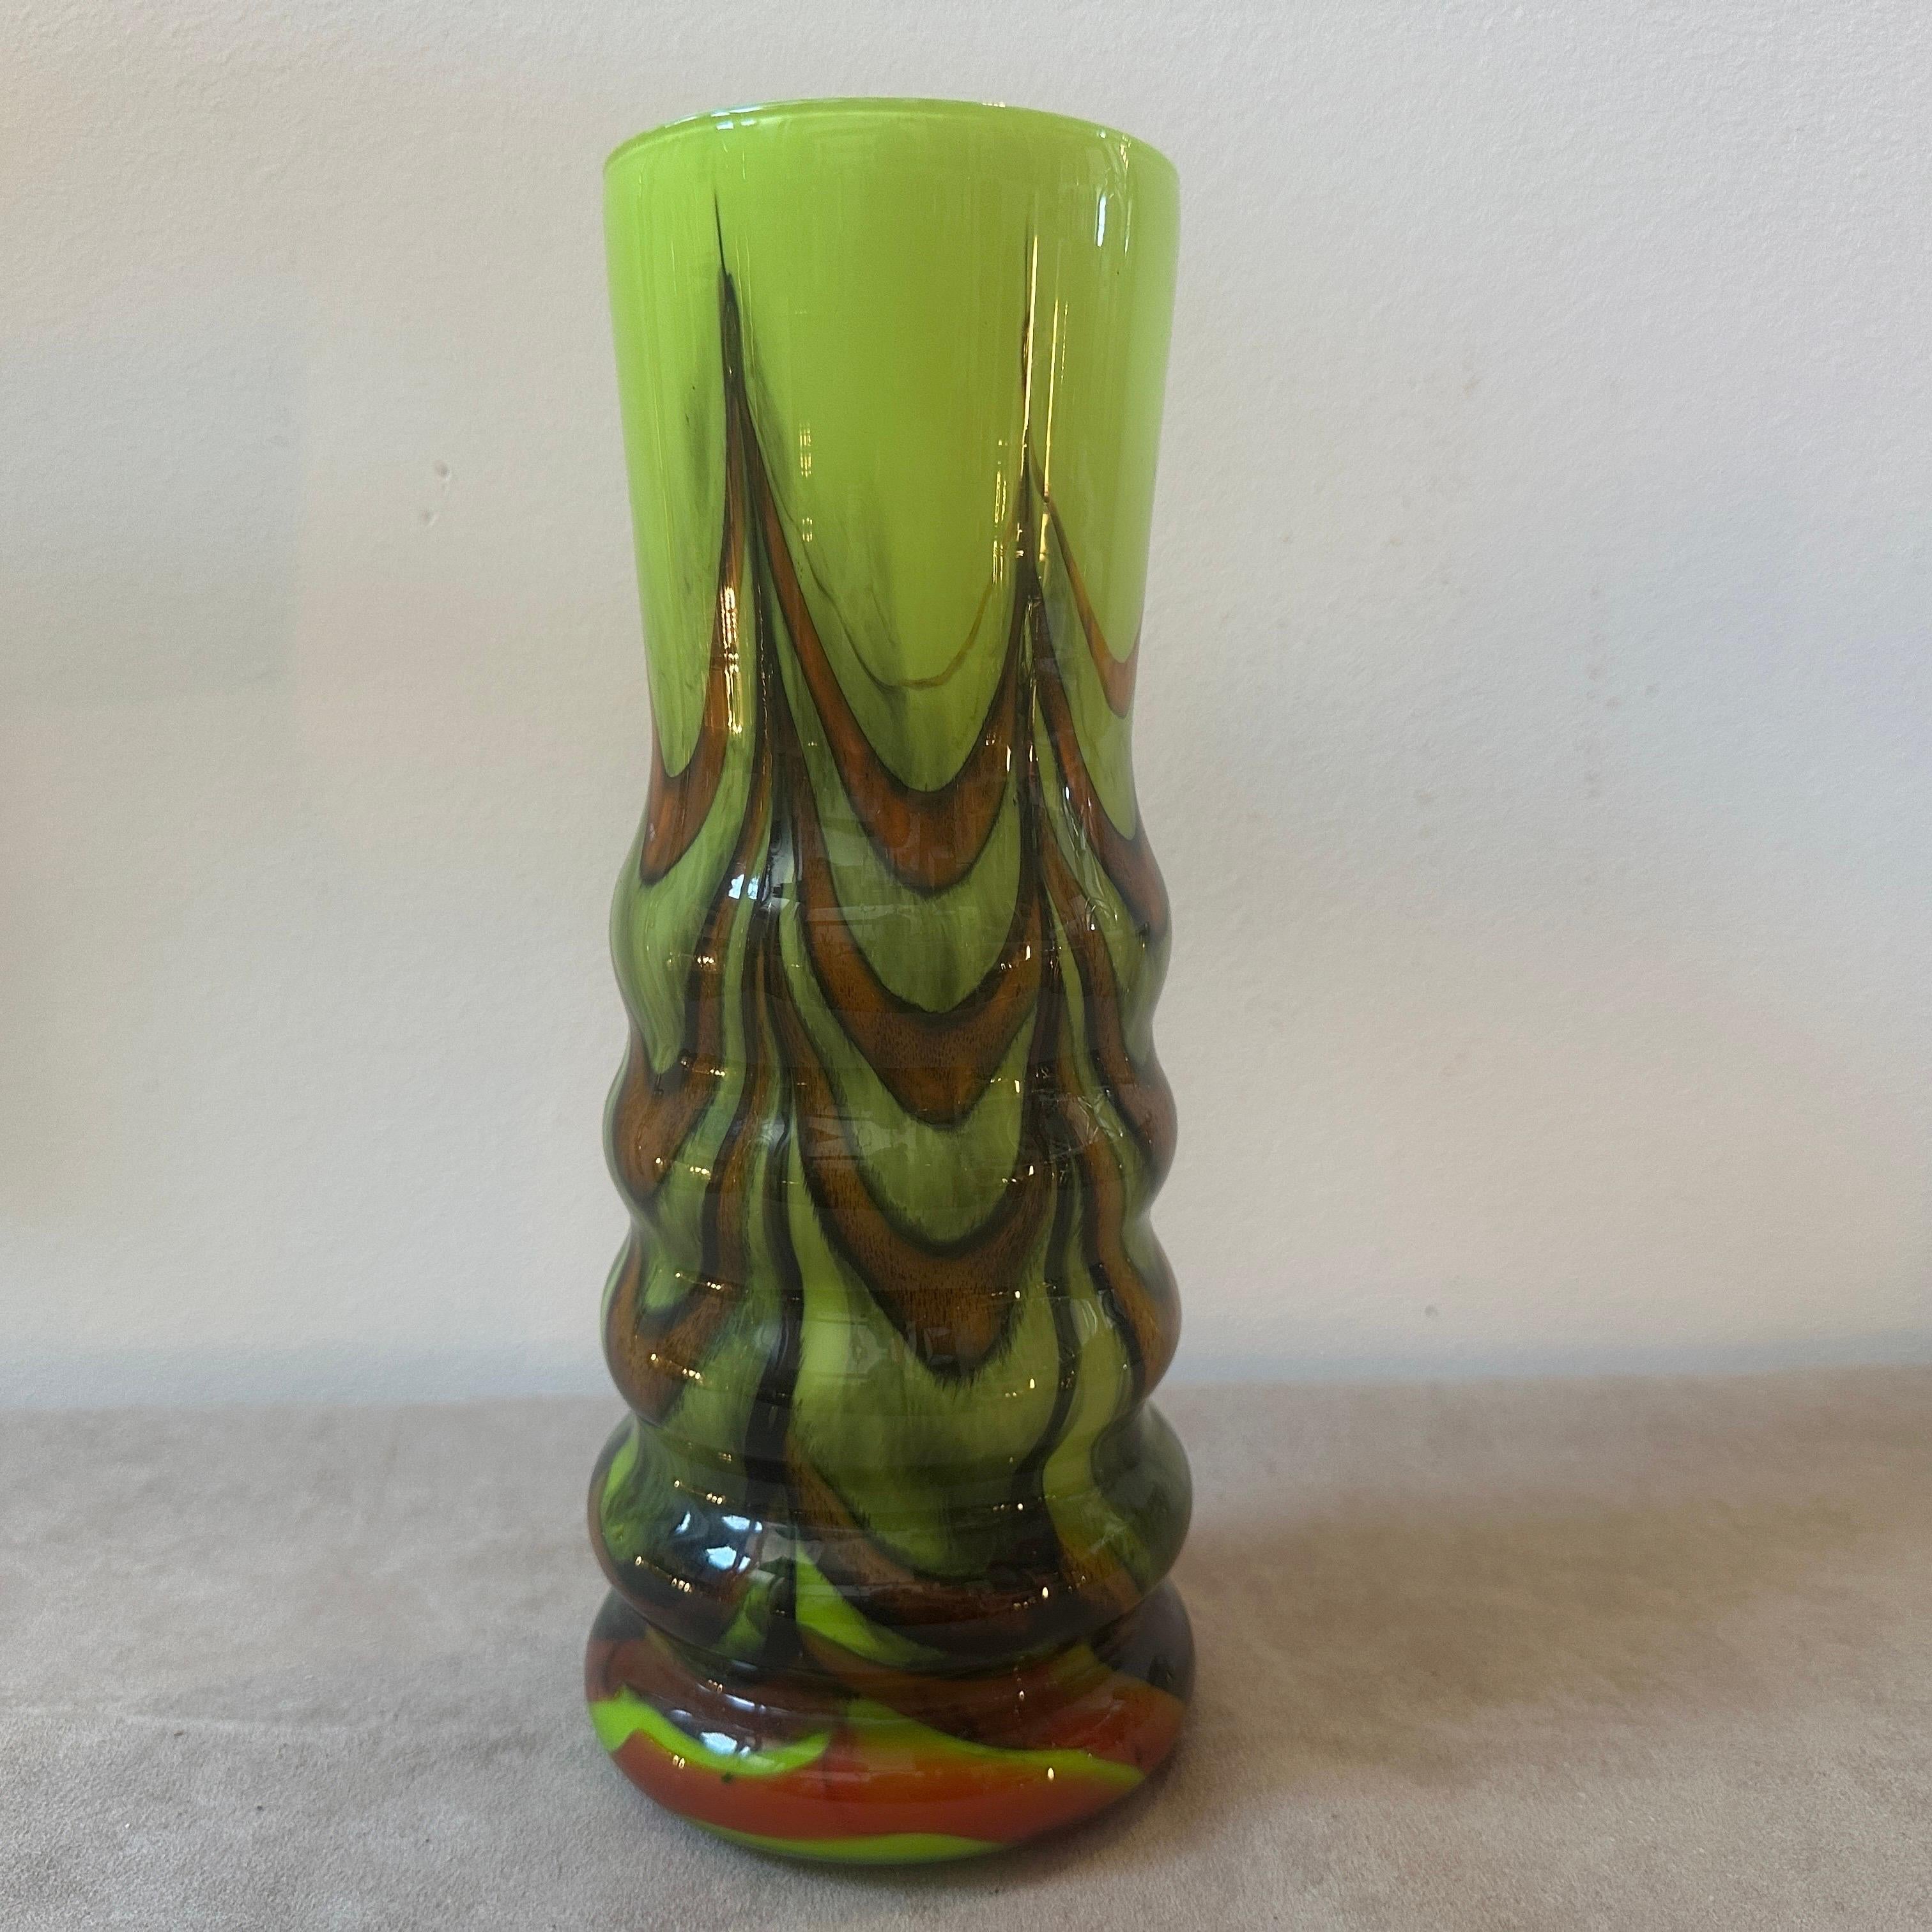 Un vase en verre opalin en parfait état, conçu et fabriqué en Italie par Opaline Florence. Le vase dégage une impression de flair artistique et de sophistication, caractéristique du travail de Carlo Moretti. La combinaison du verre opalin et des